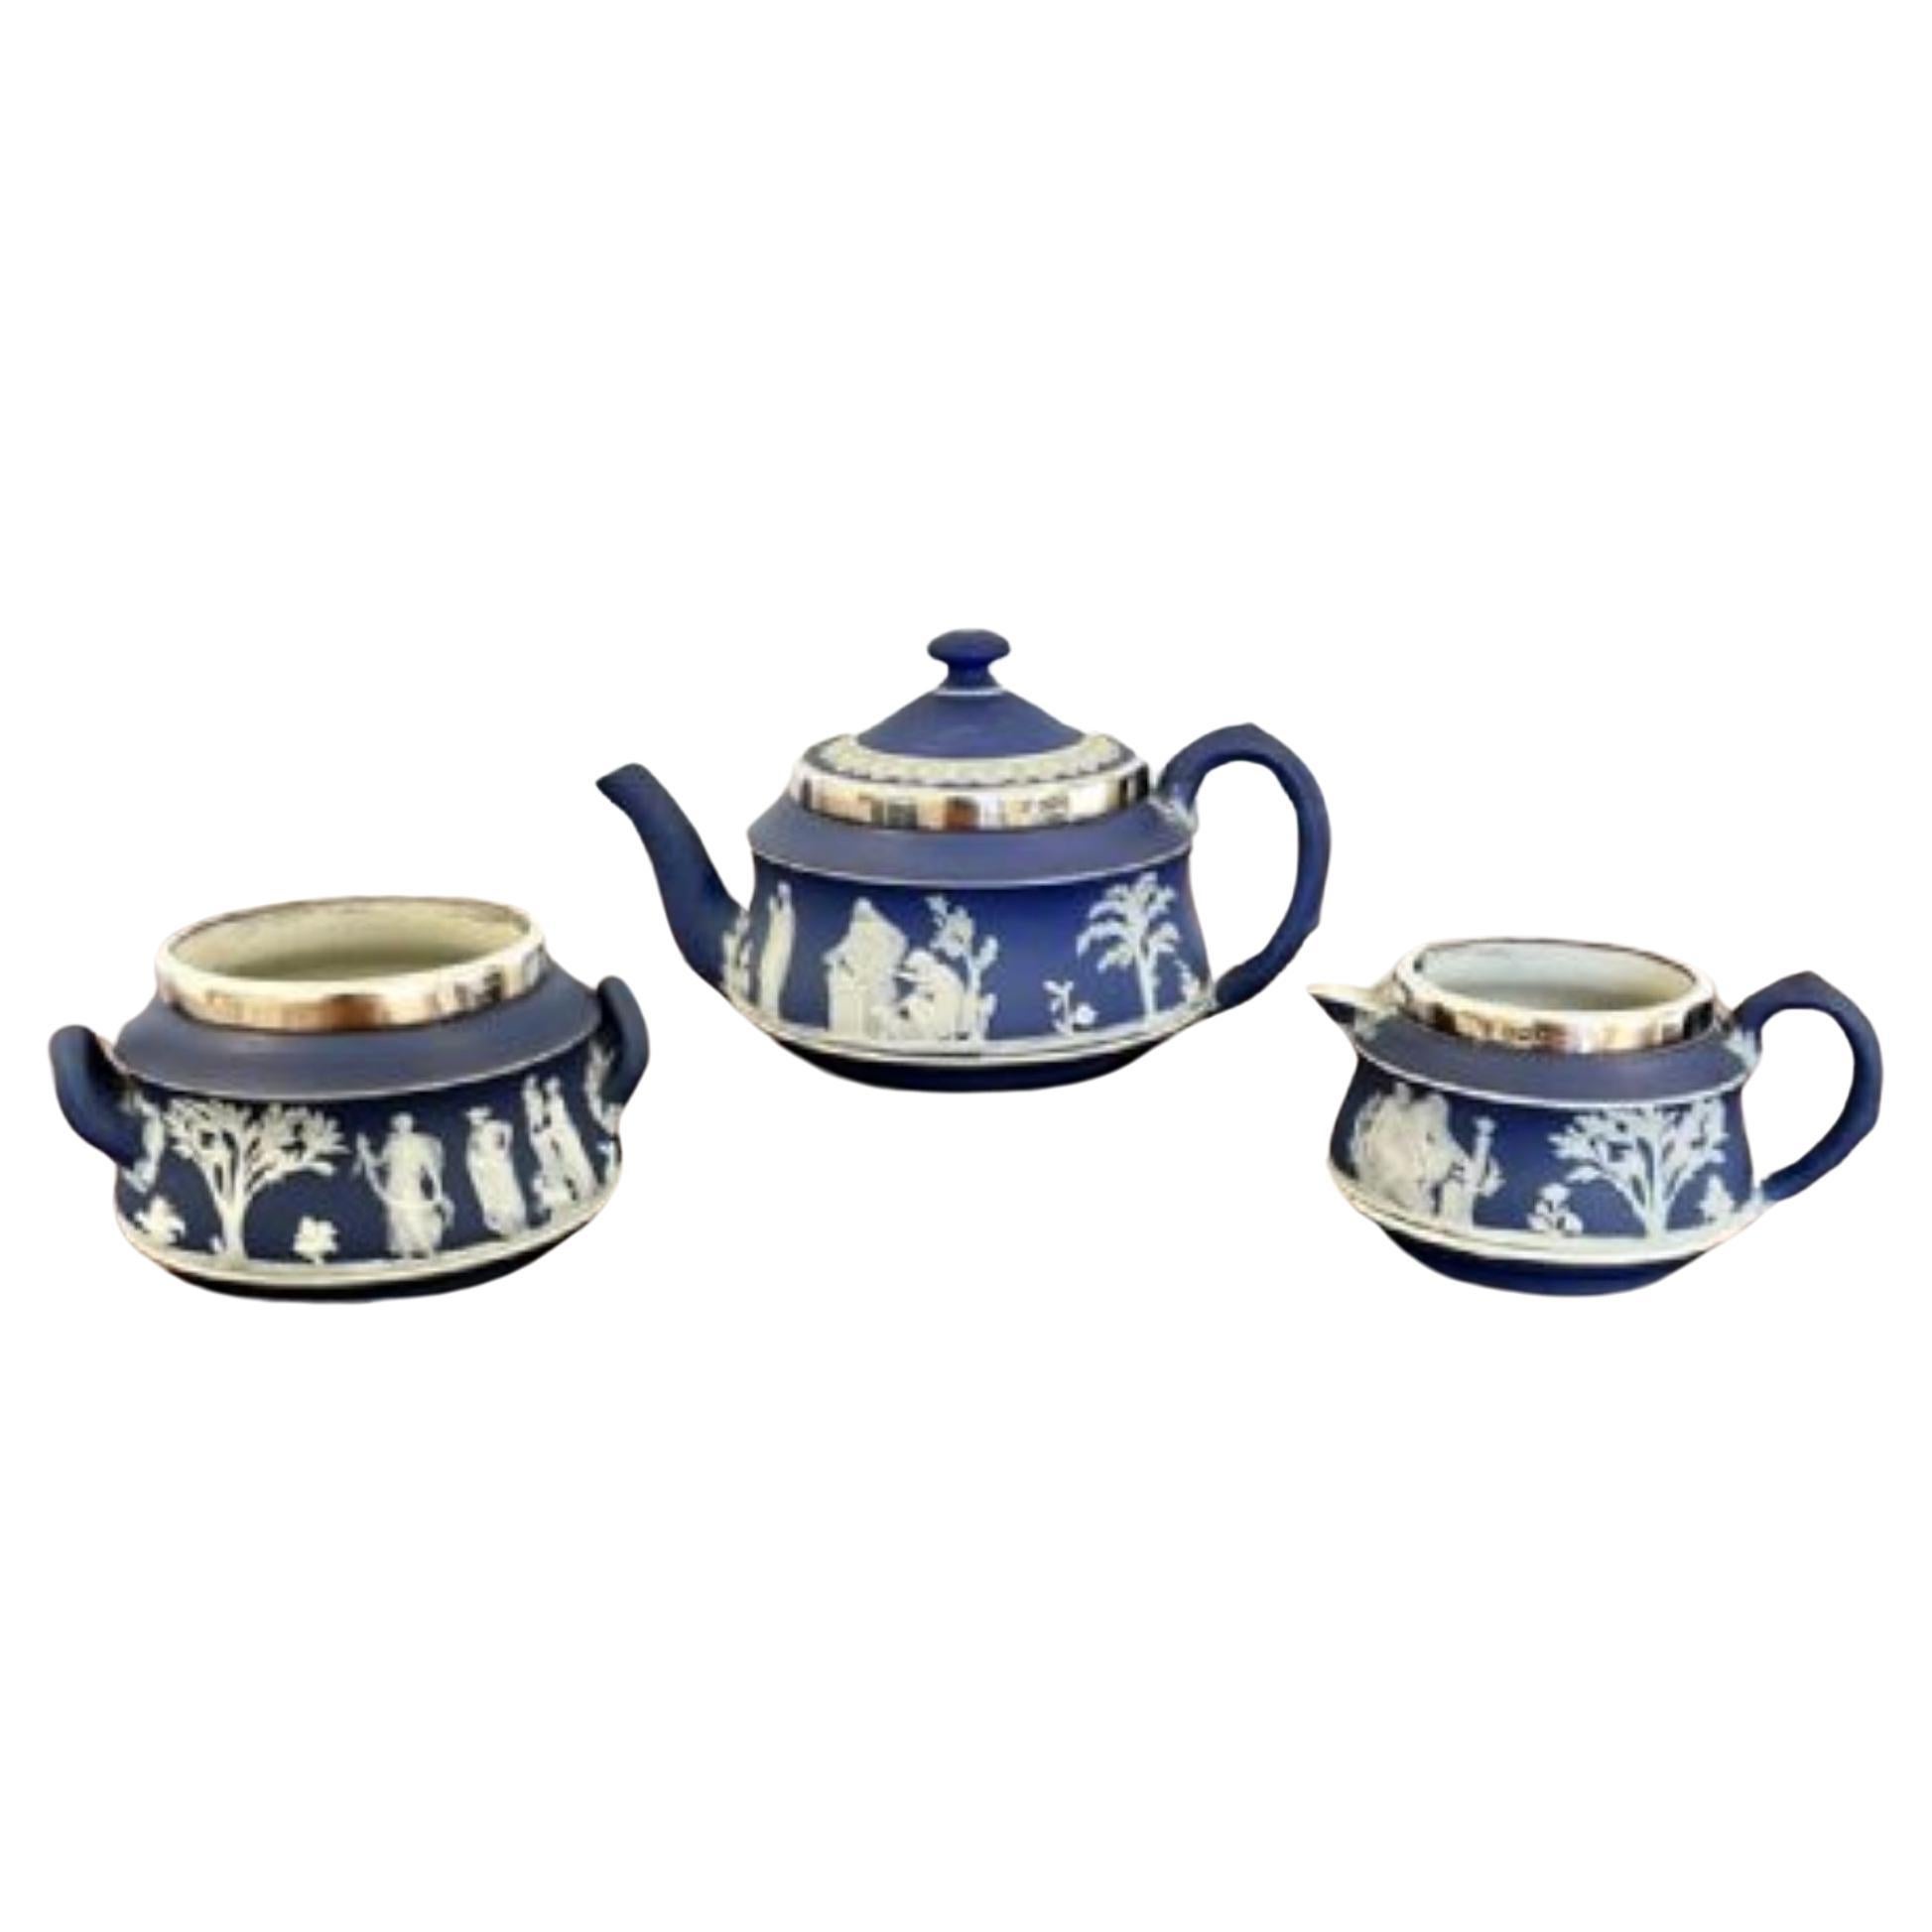 Juego de té de calidad antiguo victoriano de tres piezas montado en plata Jasperware Wedgwood